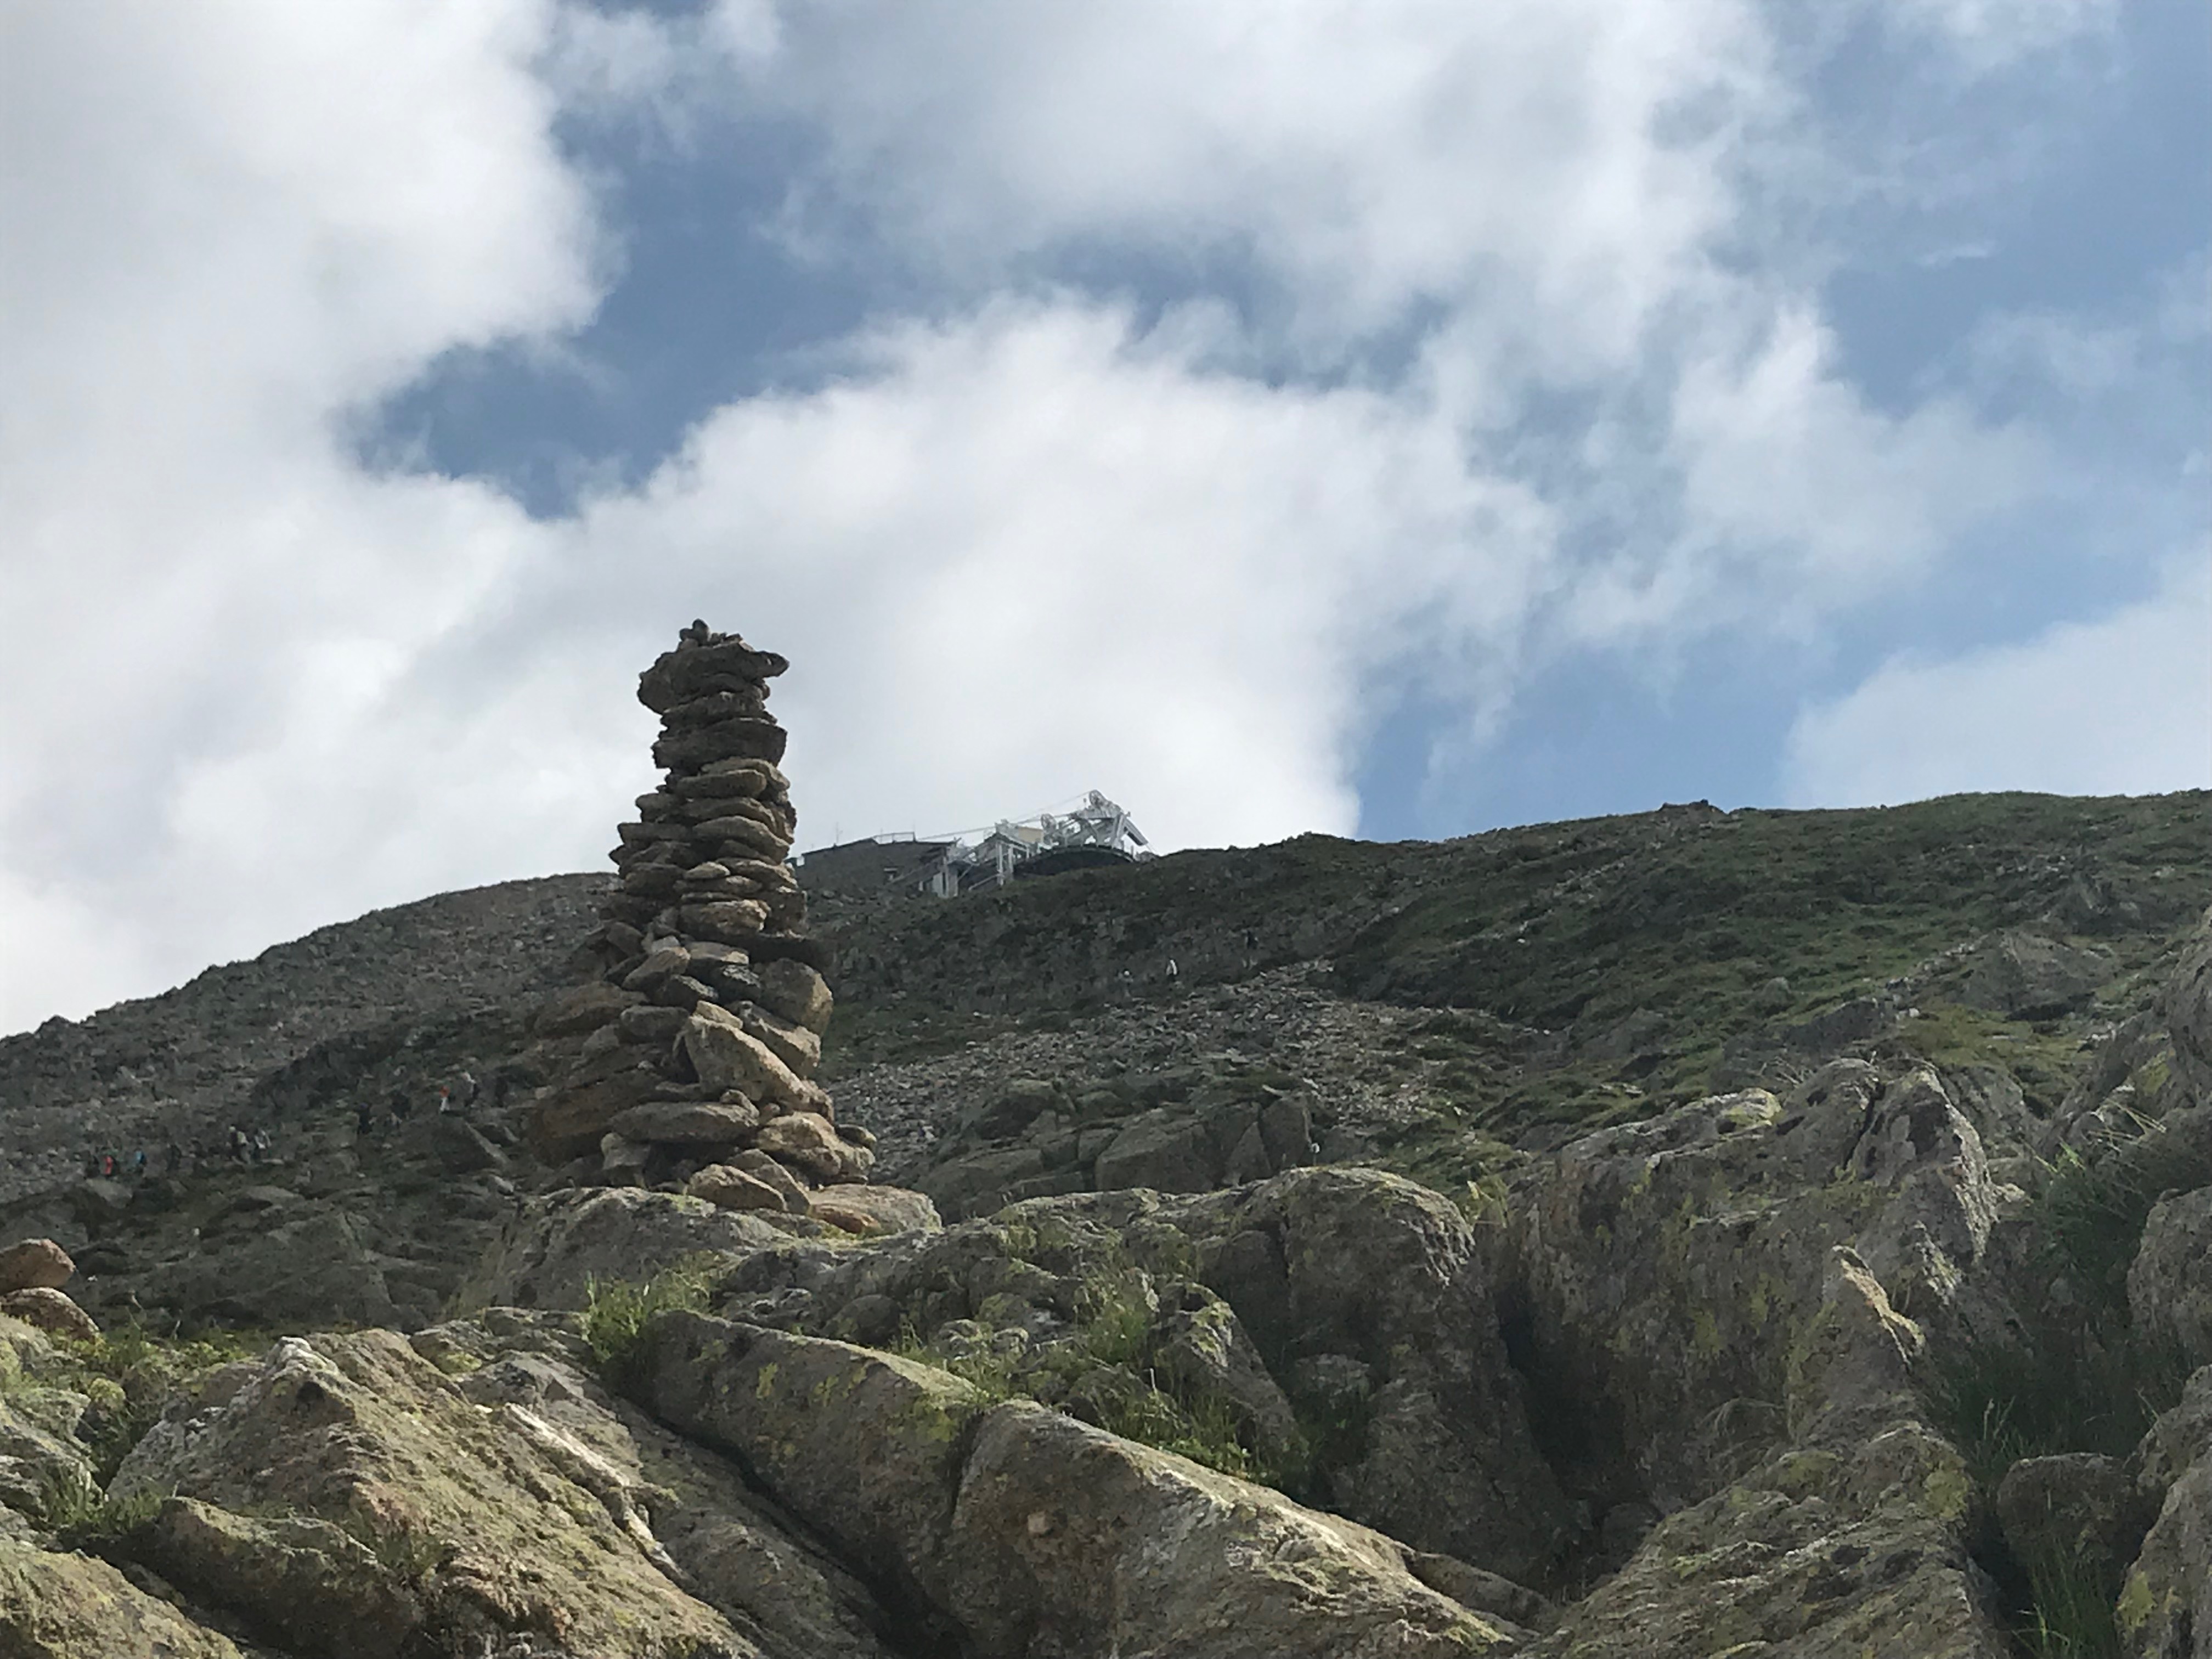 Suivre les cairns pour arriver à la gare du Brévent (2525 m). Facile à dire… Marche et Rêve / Jacky Fabis